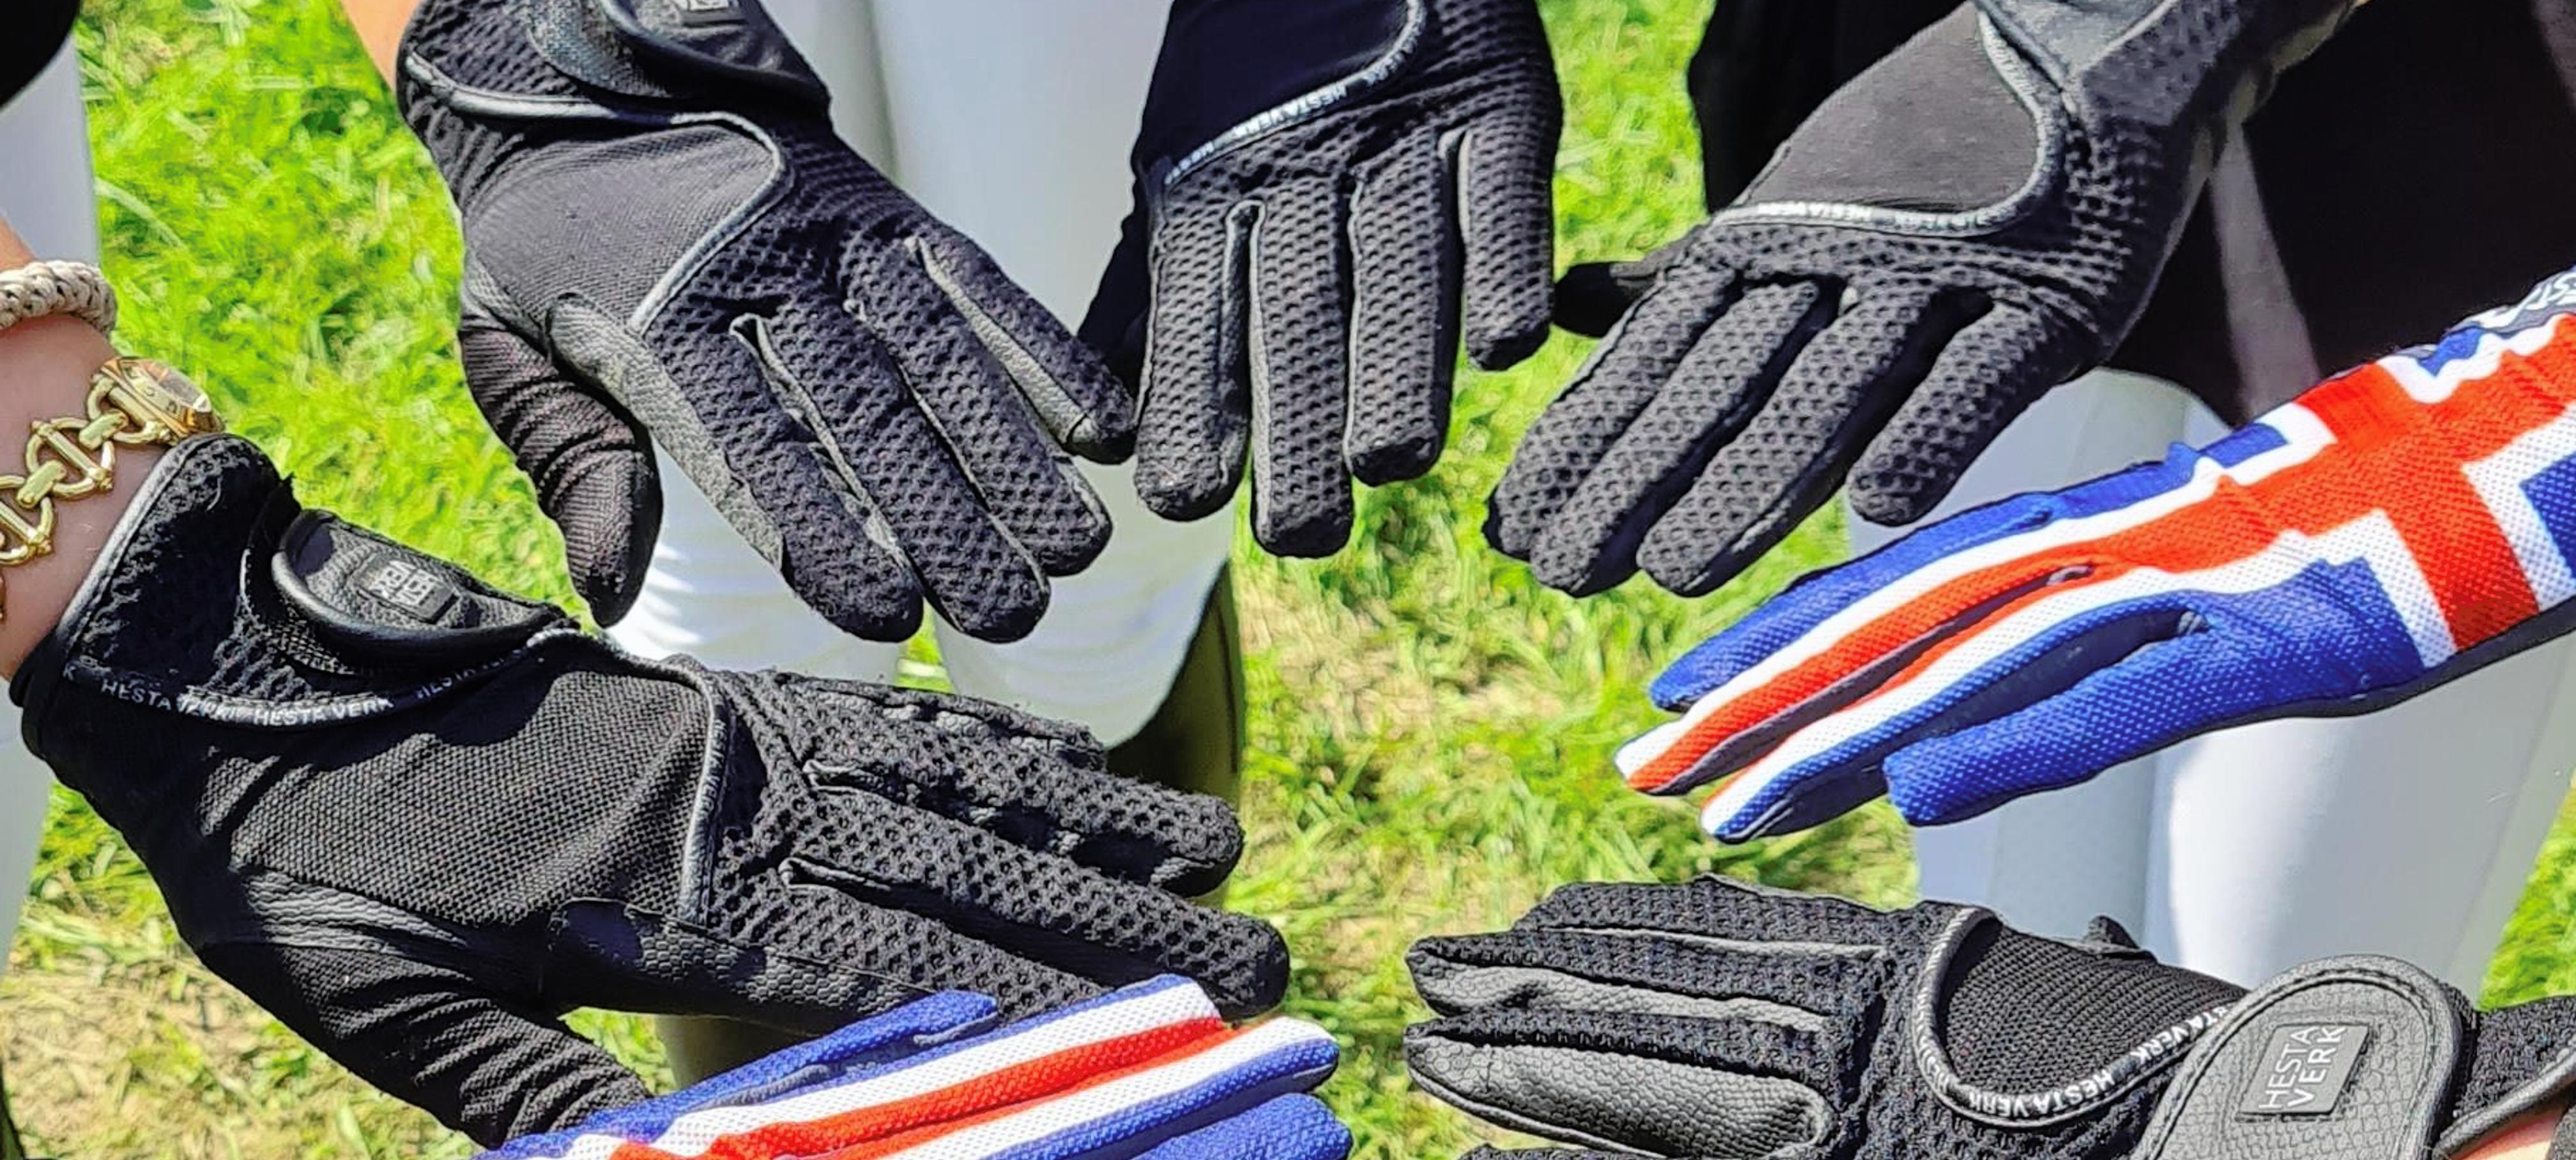 FK Sponsorenbild Handschuhe.jpg